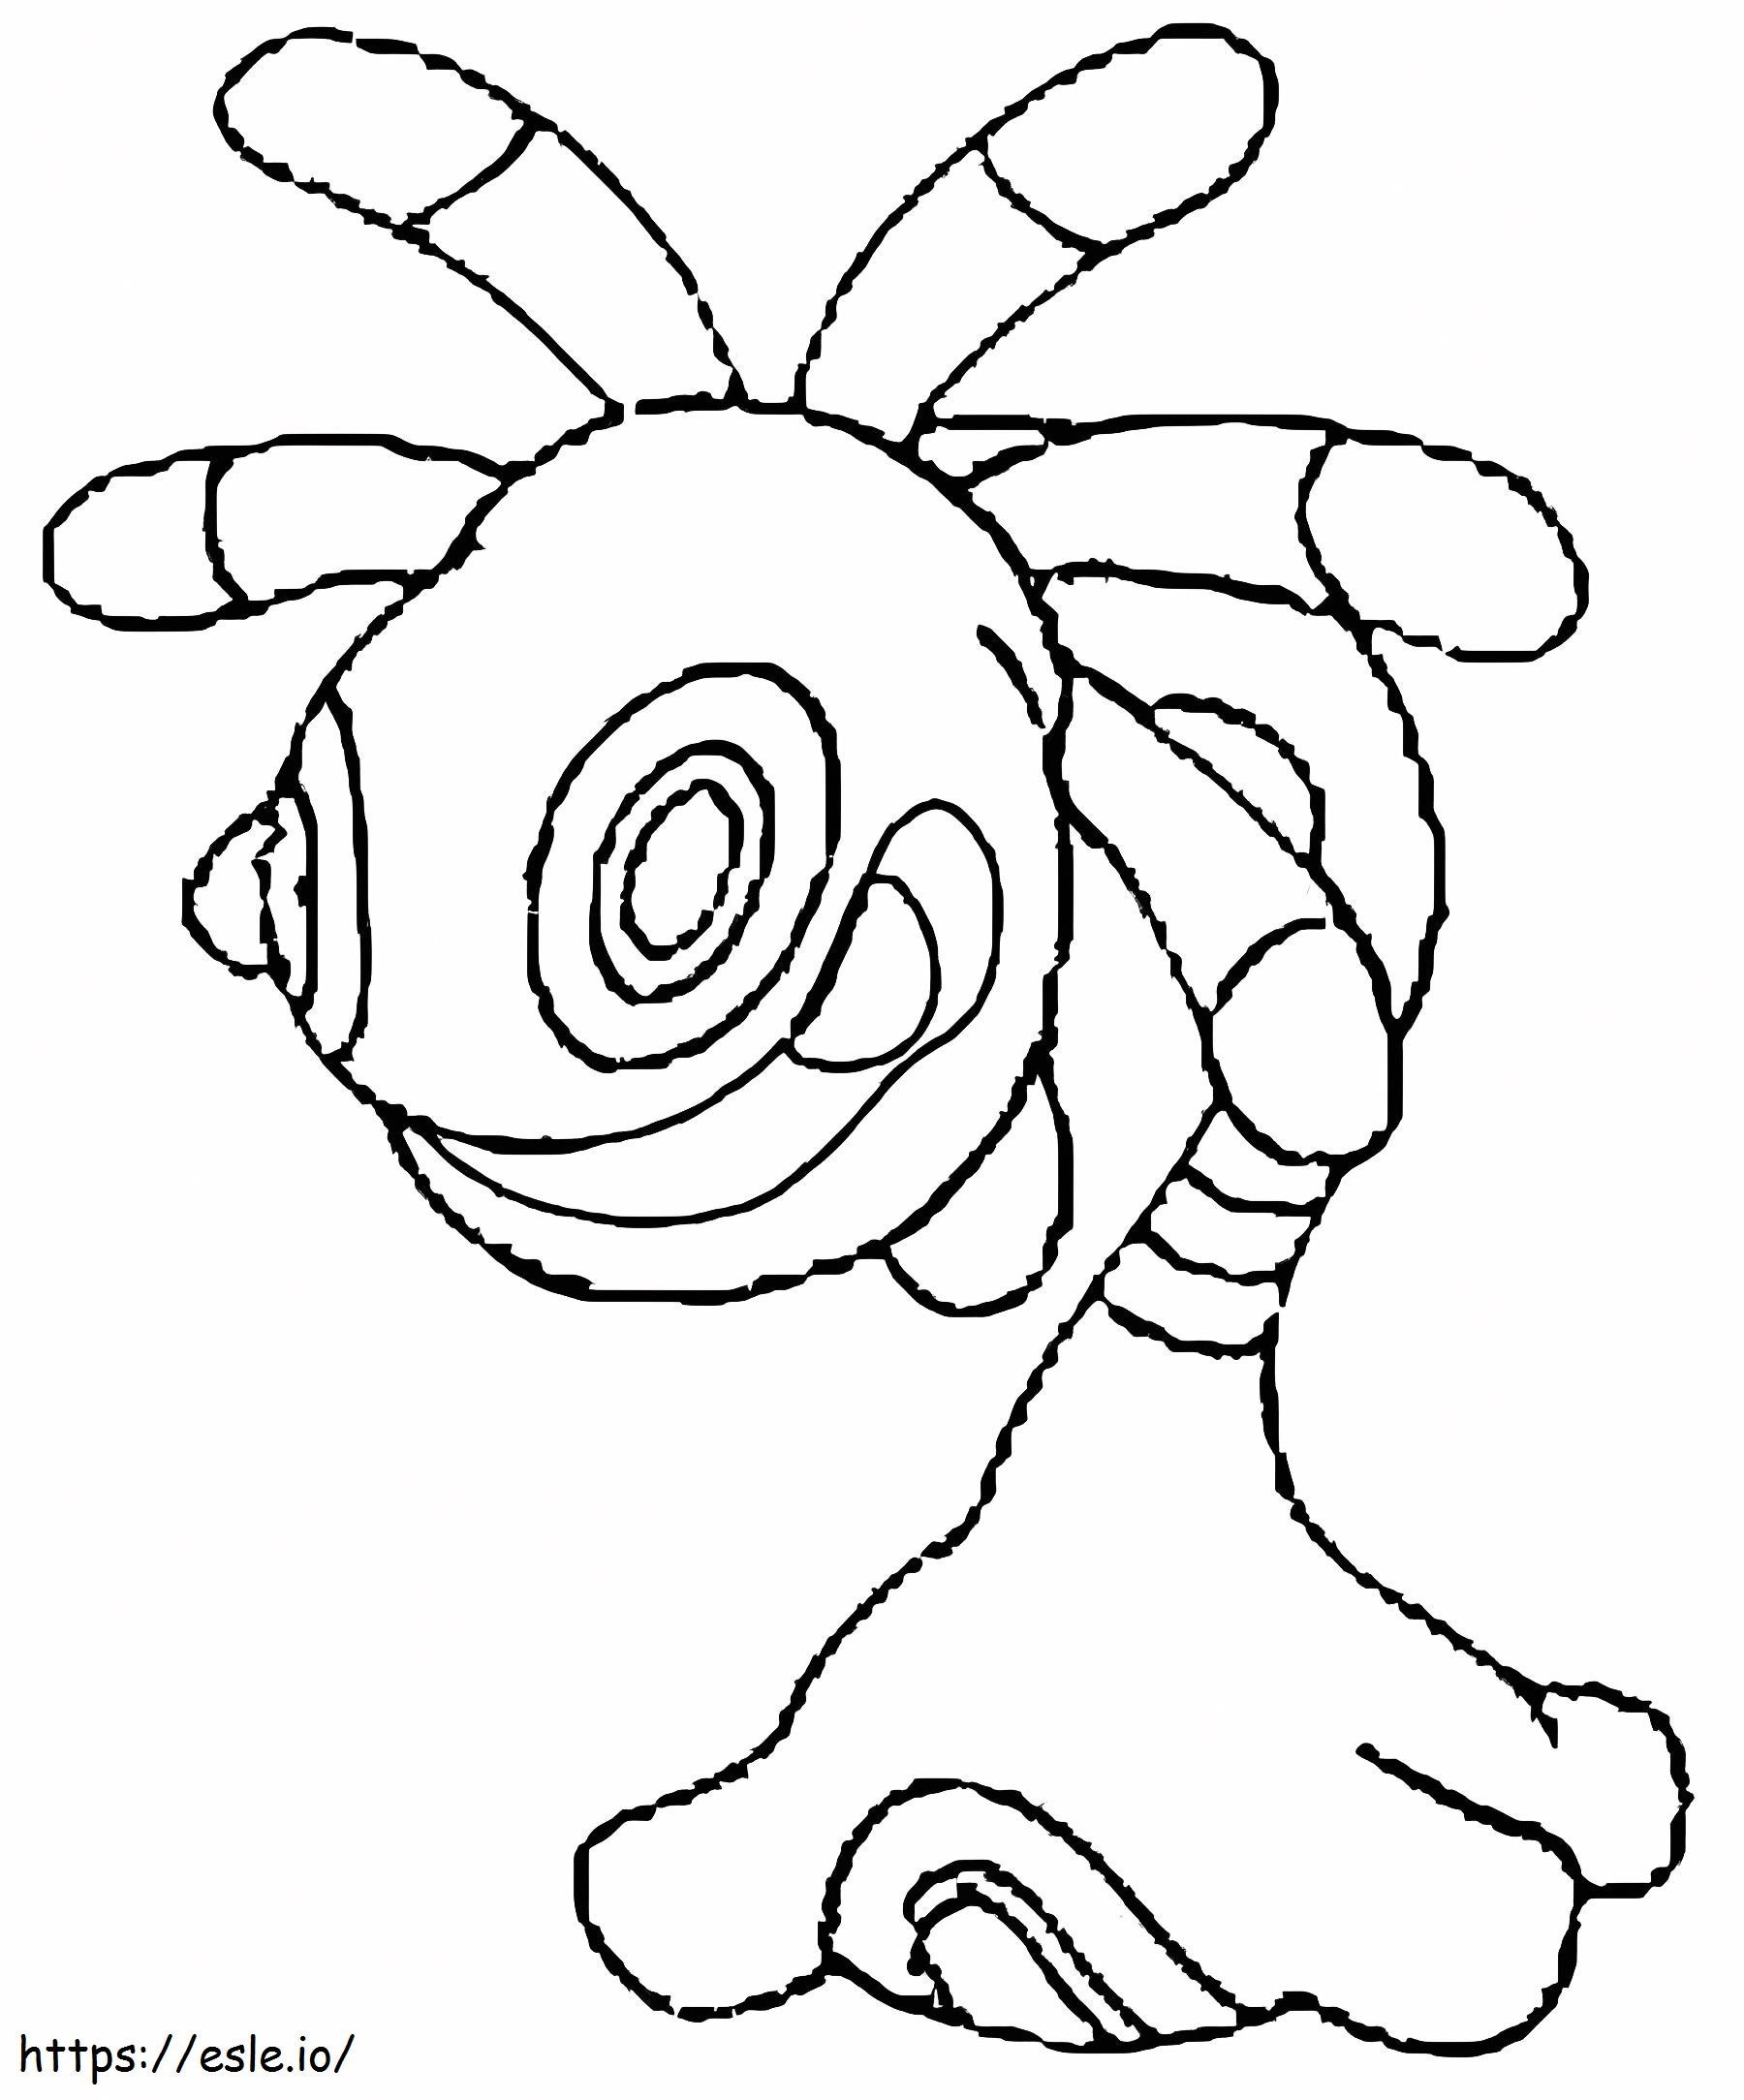 Coloriage Pokémon Cradily Gen 3 à imprimer dessin